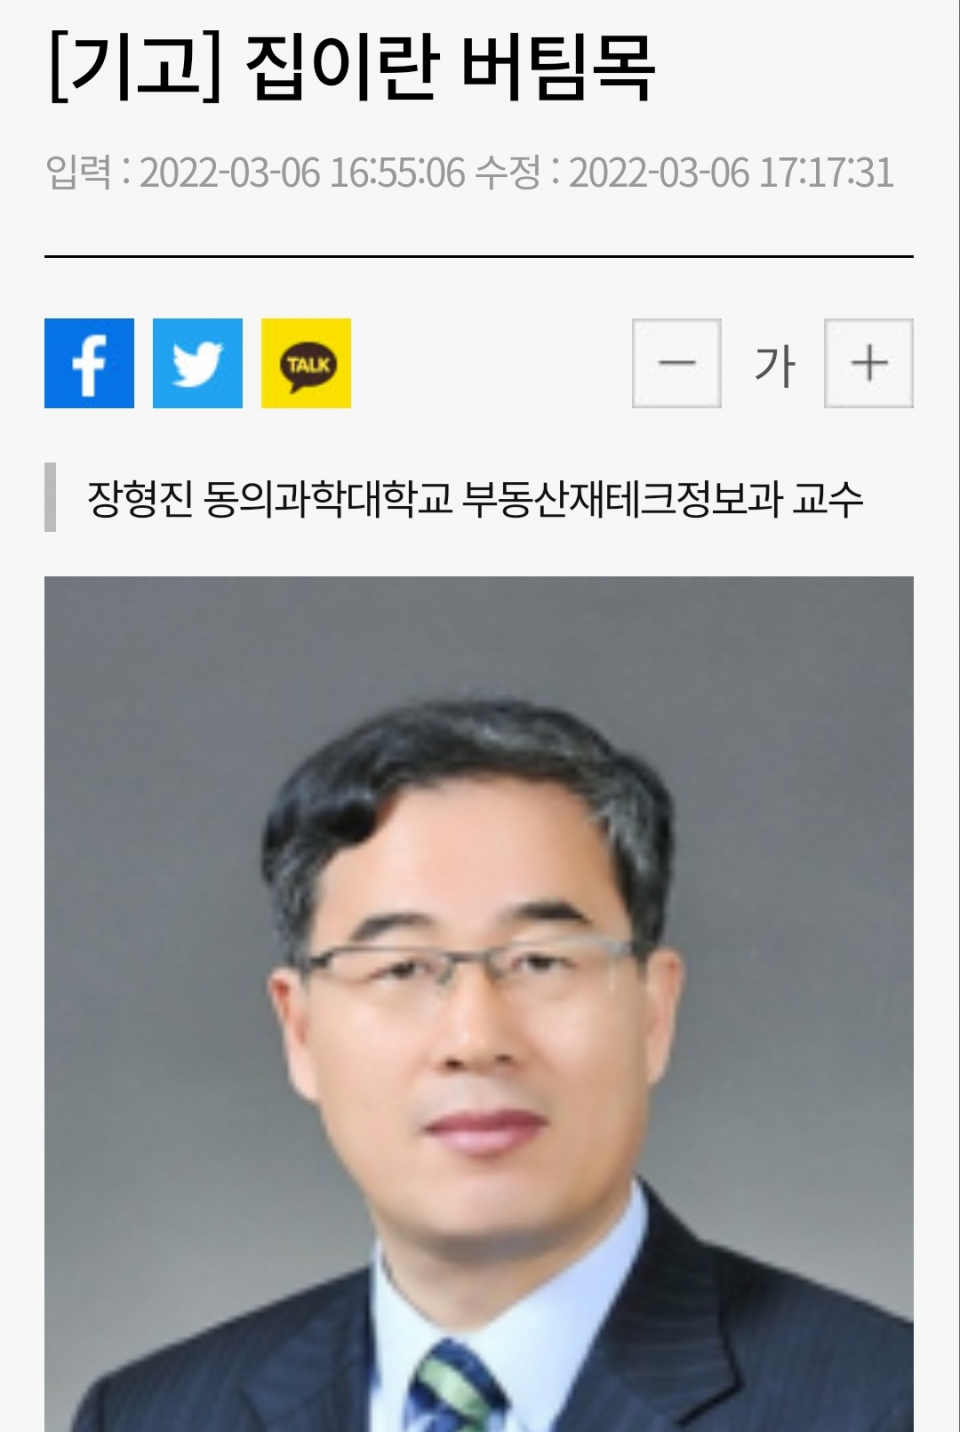 장형진 교수님 부산일보 기고문